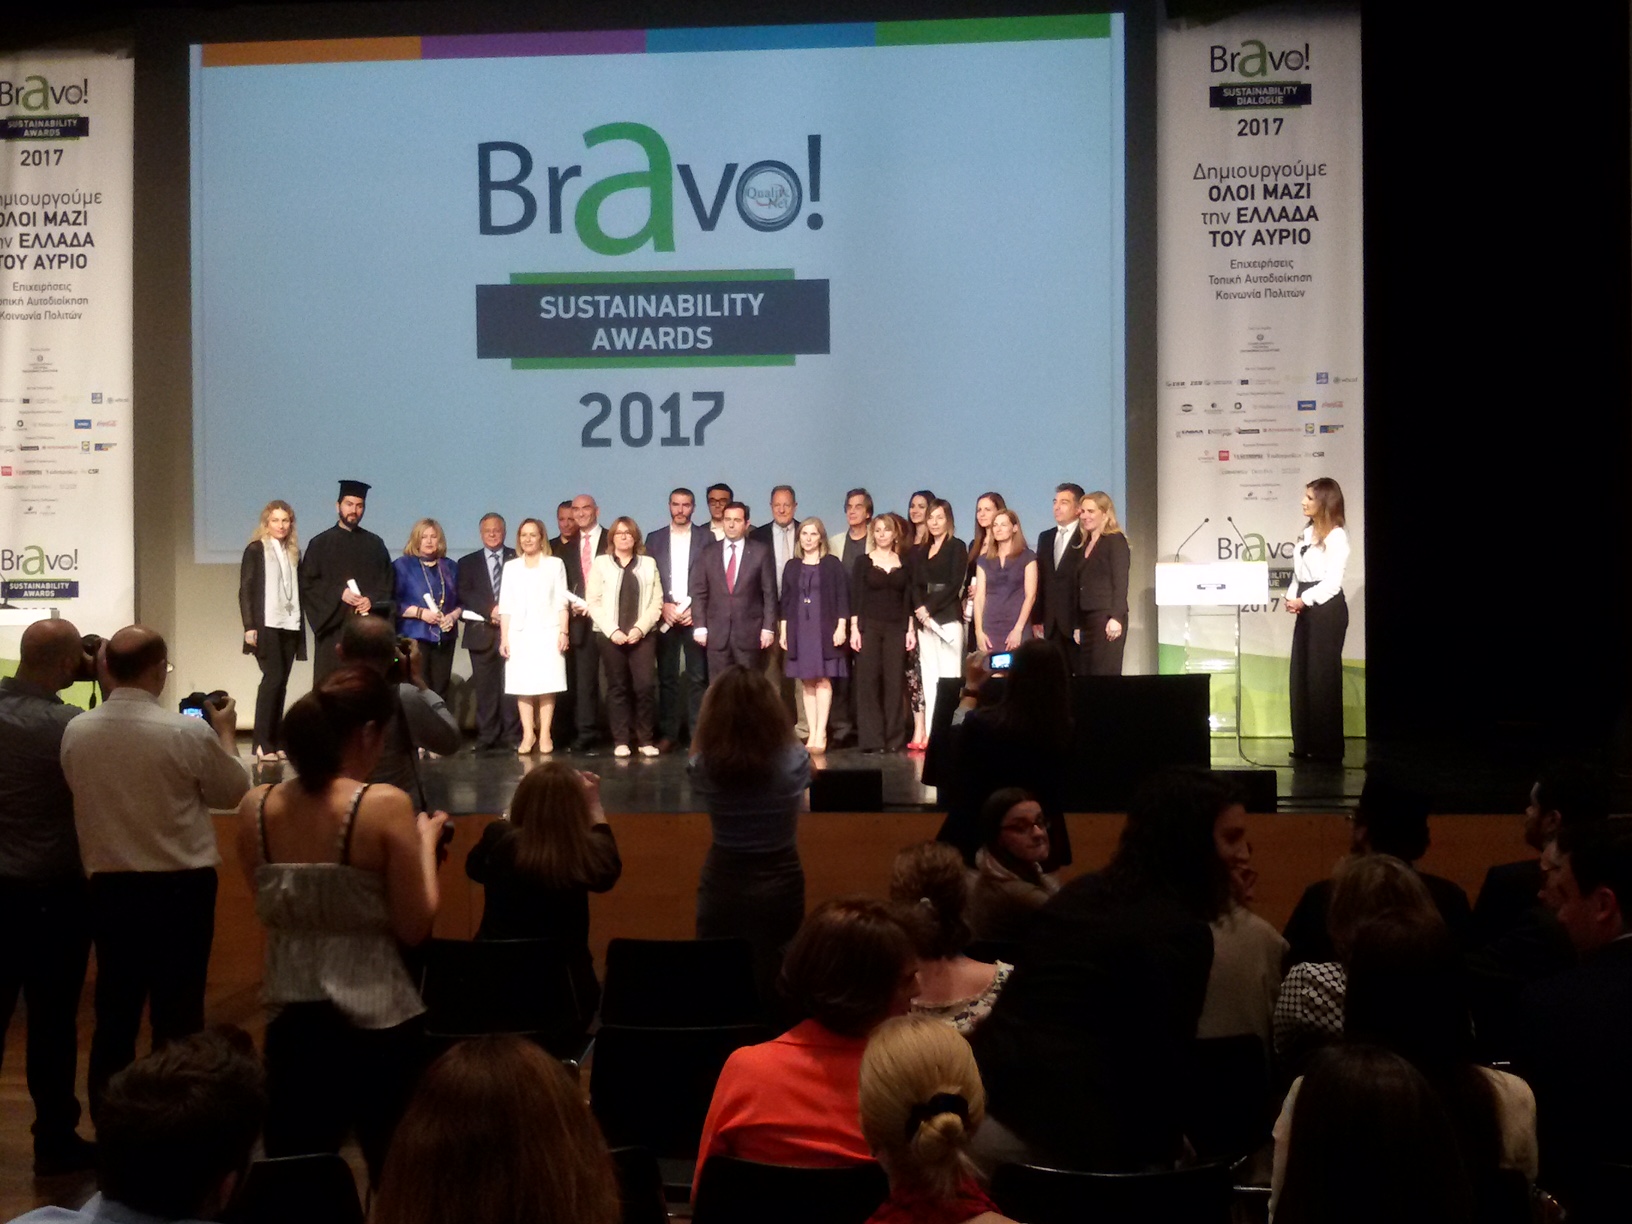  Διπλή βράβευση για την Περιφέρεια Κρήτης στην ετήσια εκδήλωση του Θεσμού Bravo Awards